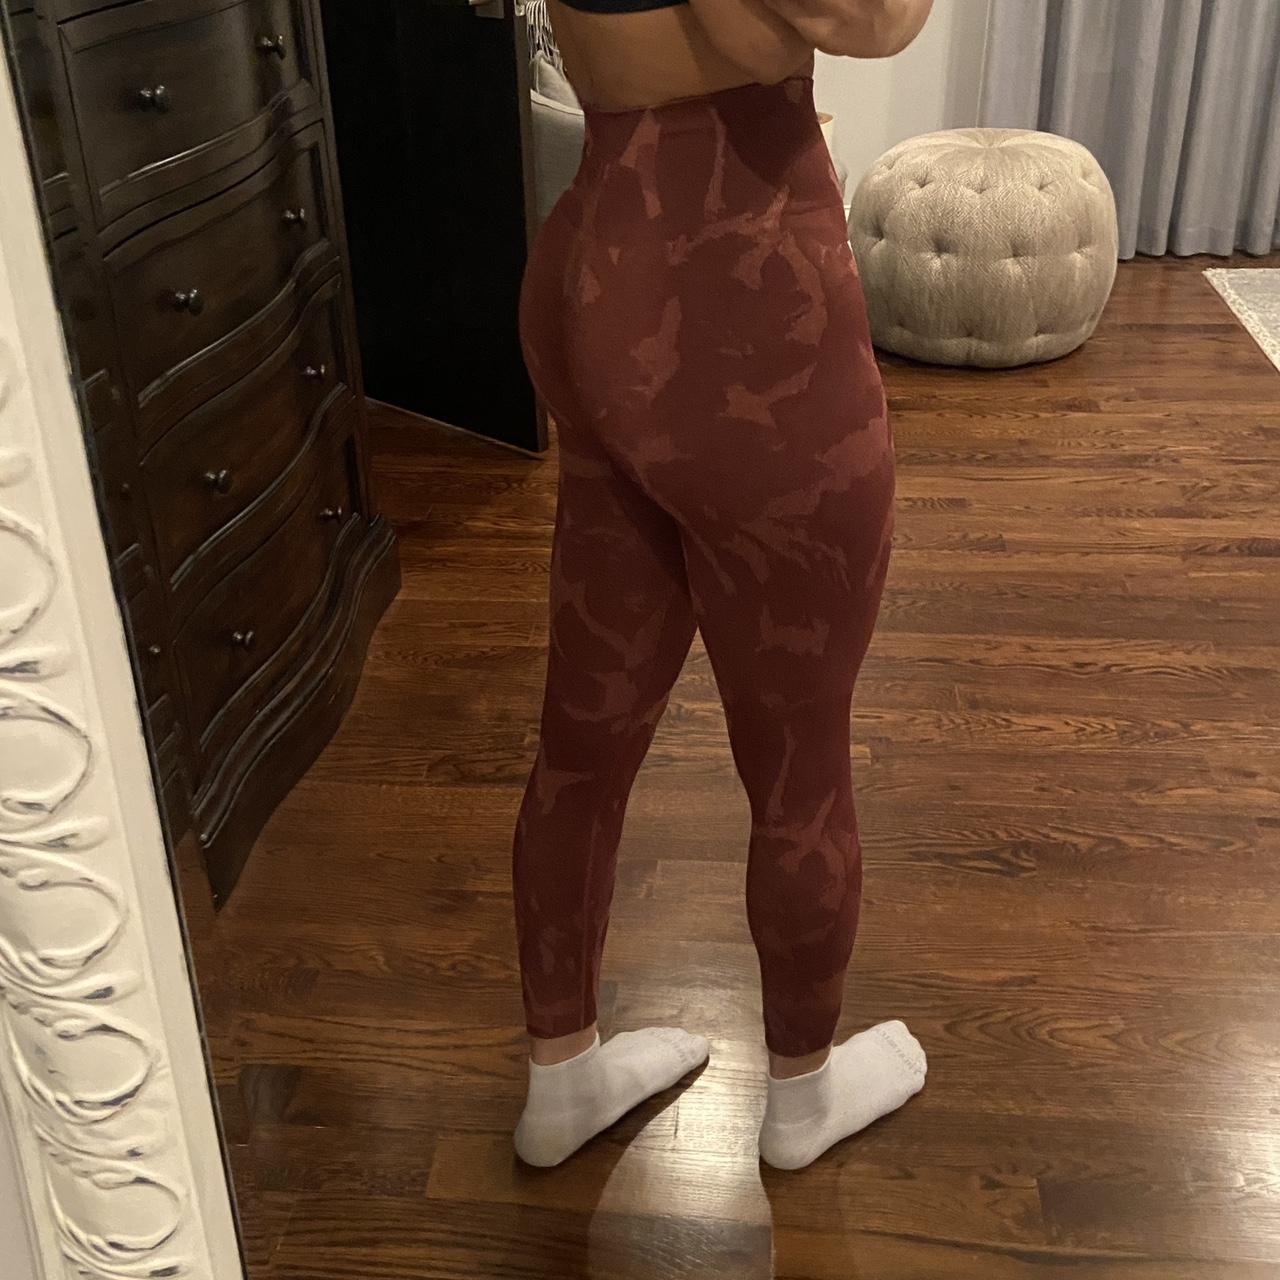 XS camo gymshark leggings with scrunch butt - Depop